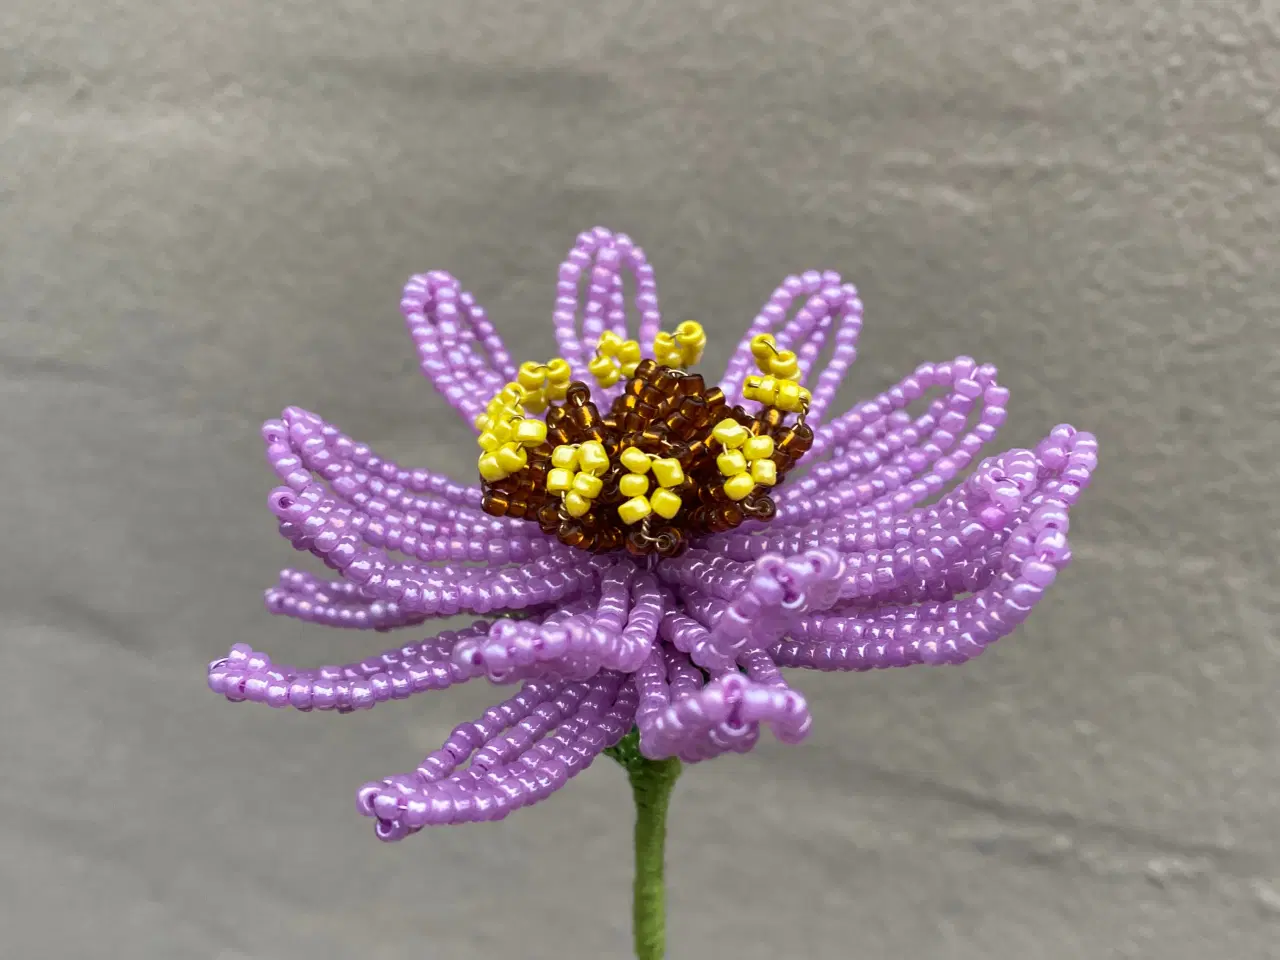 Billede 8 - Unikke evigheds blomster, lavet af perler